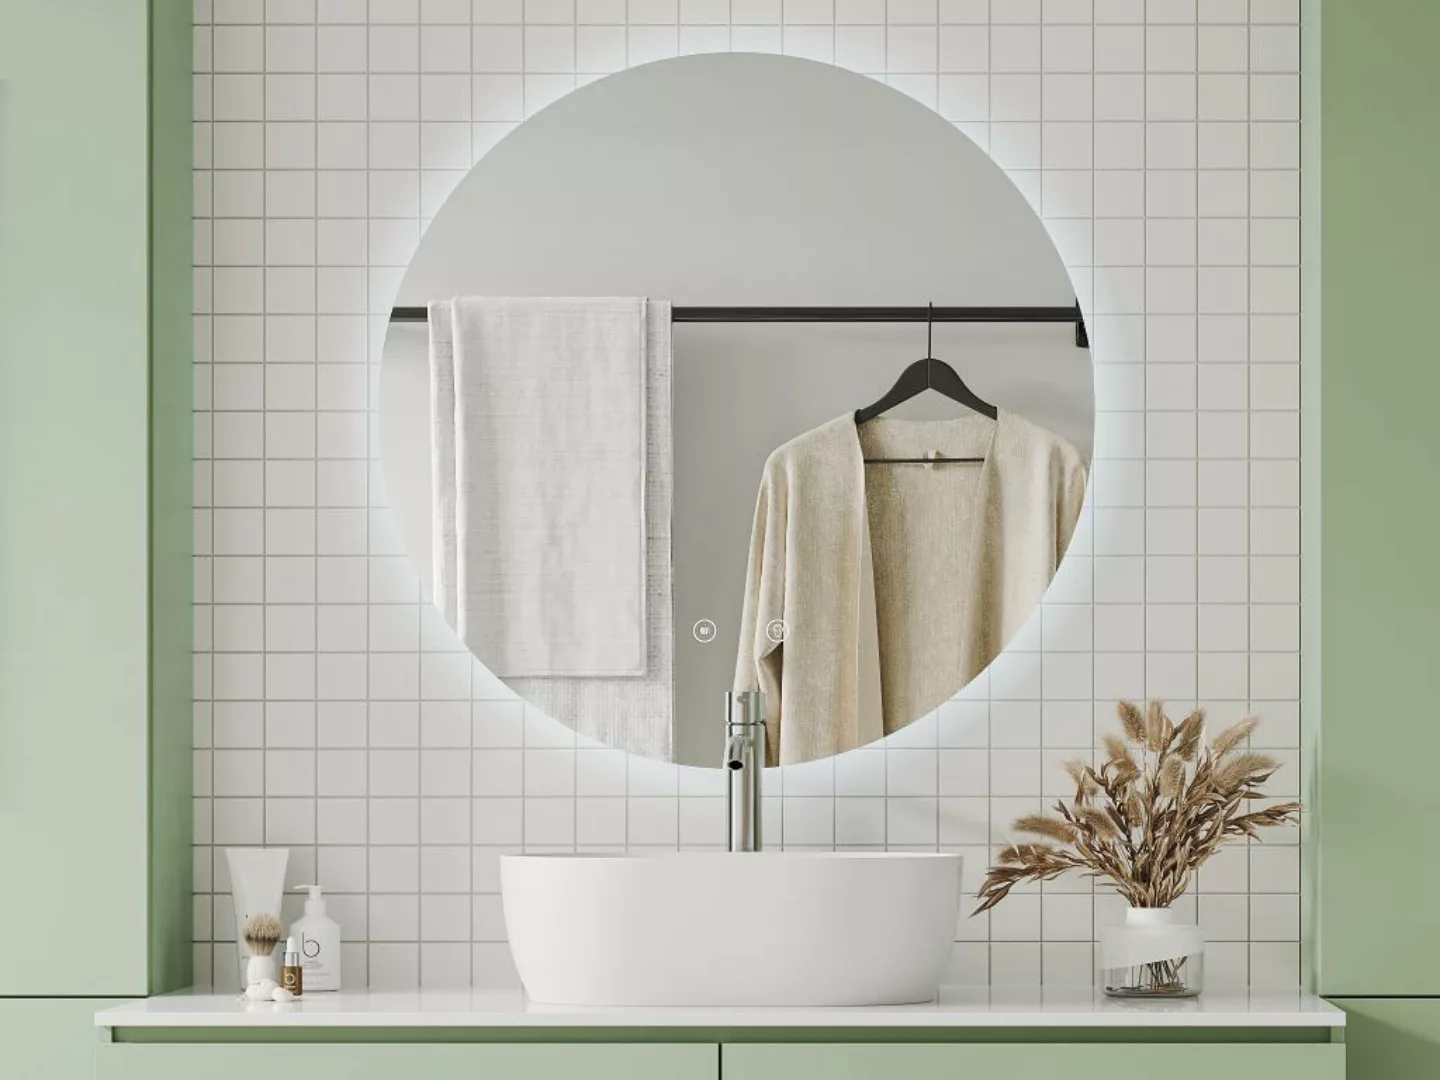 Ovaler Badezimmerspiegel - konturlos - beschlagfrei - mit LED-Beleuchtung - günstig online kaufen